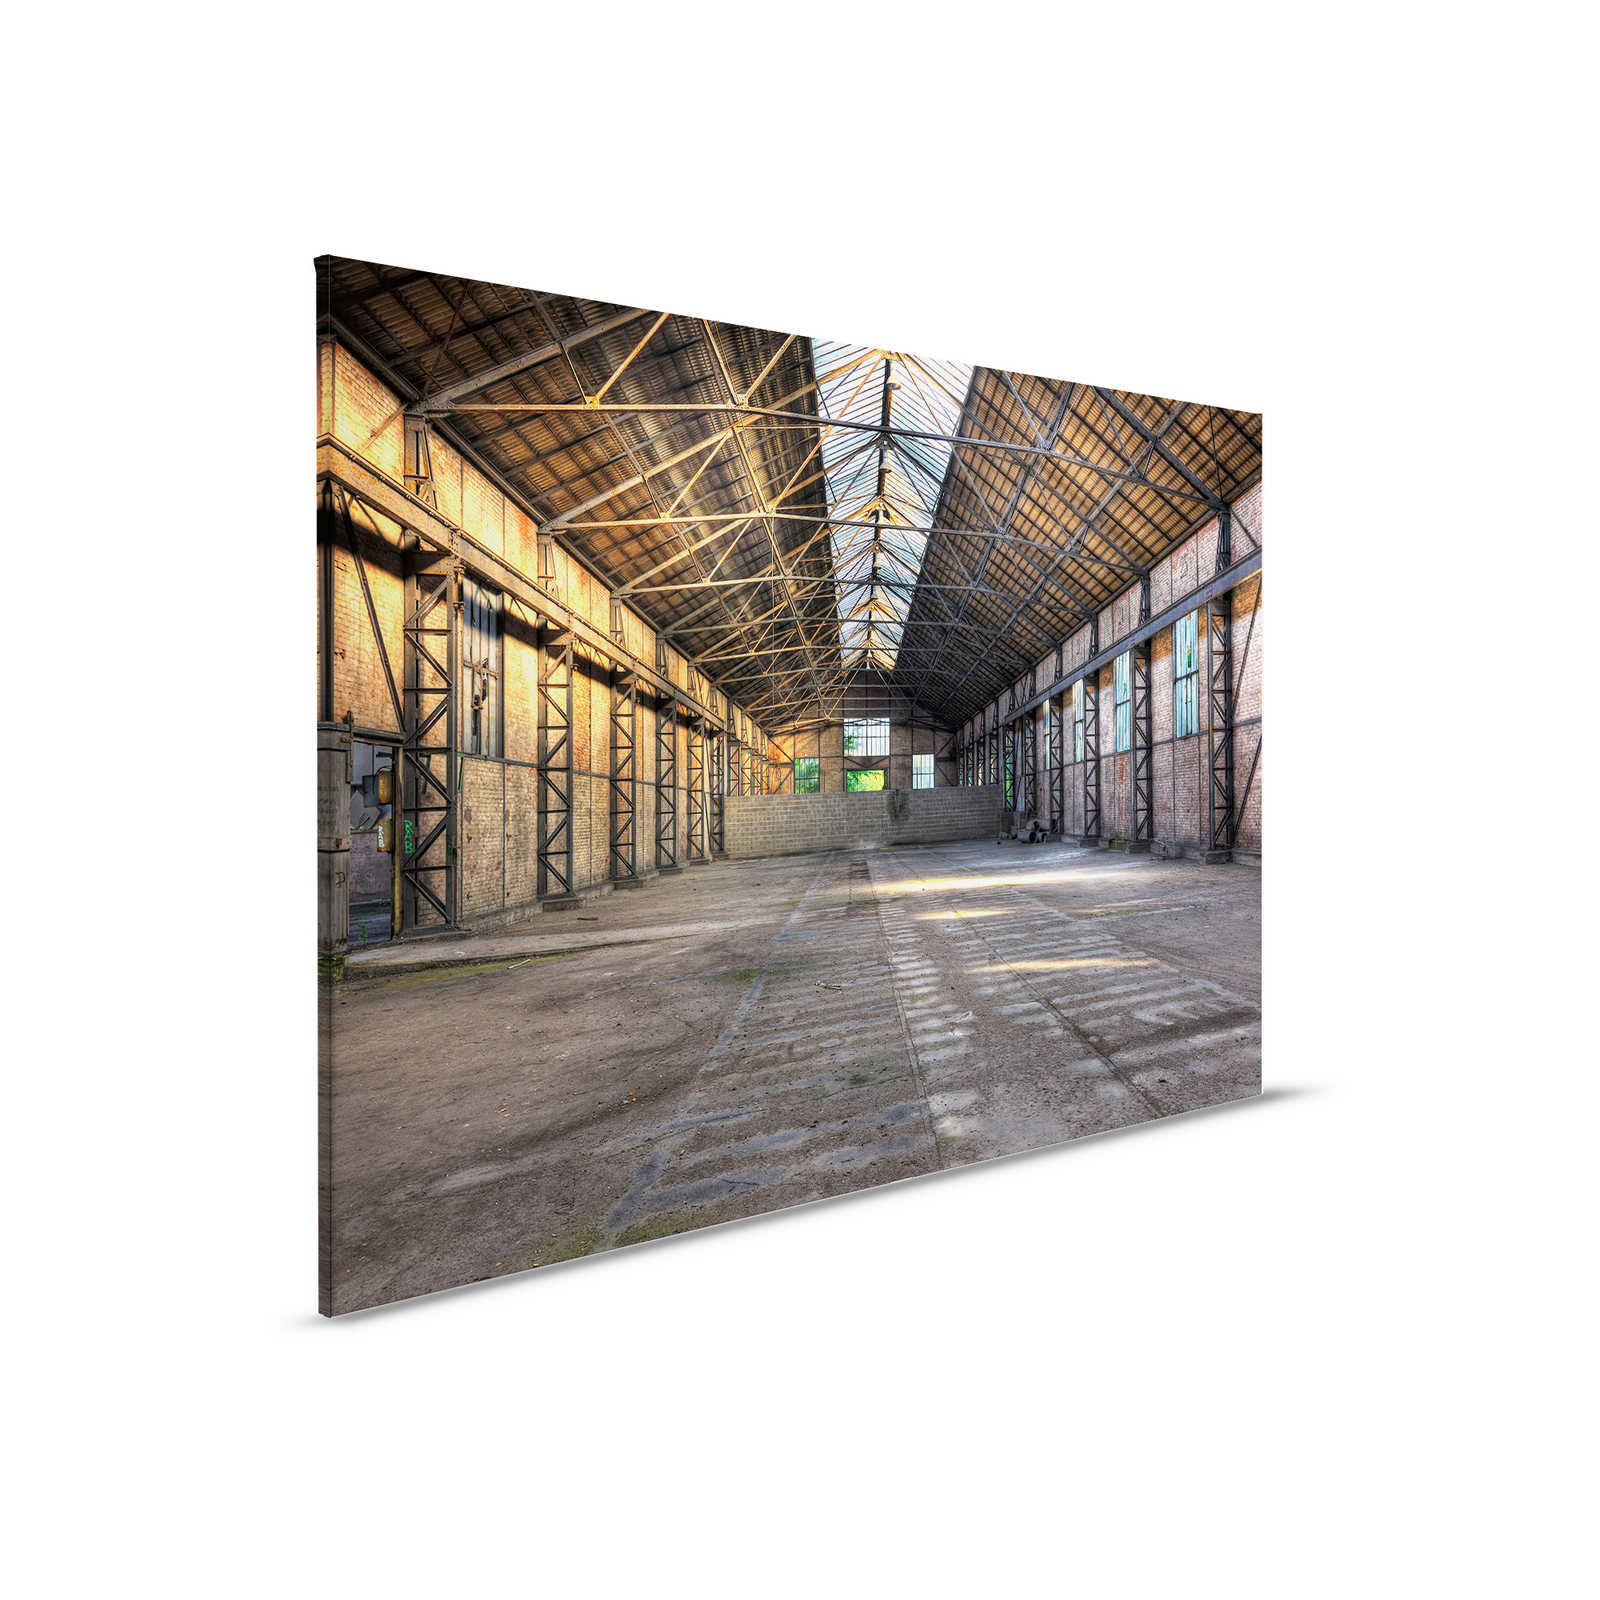         Leinwand mit verlassener Industriehalle mit 3D-Effekt – 0,90 m x 0,60 m
    